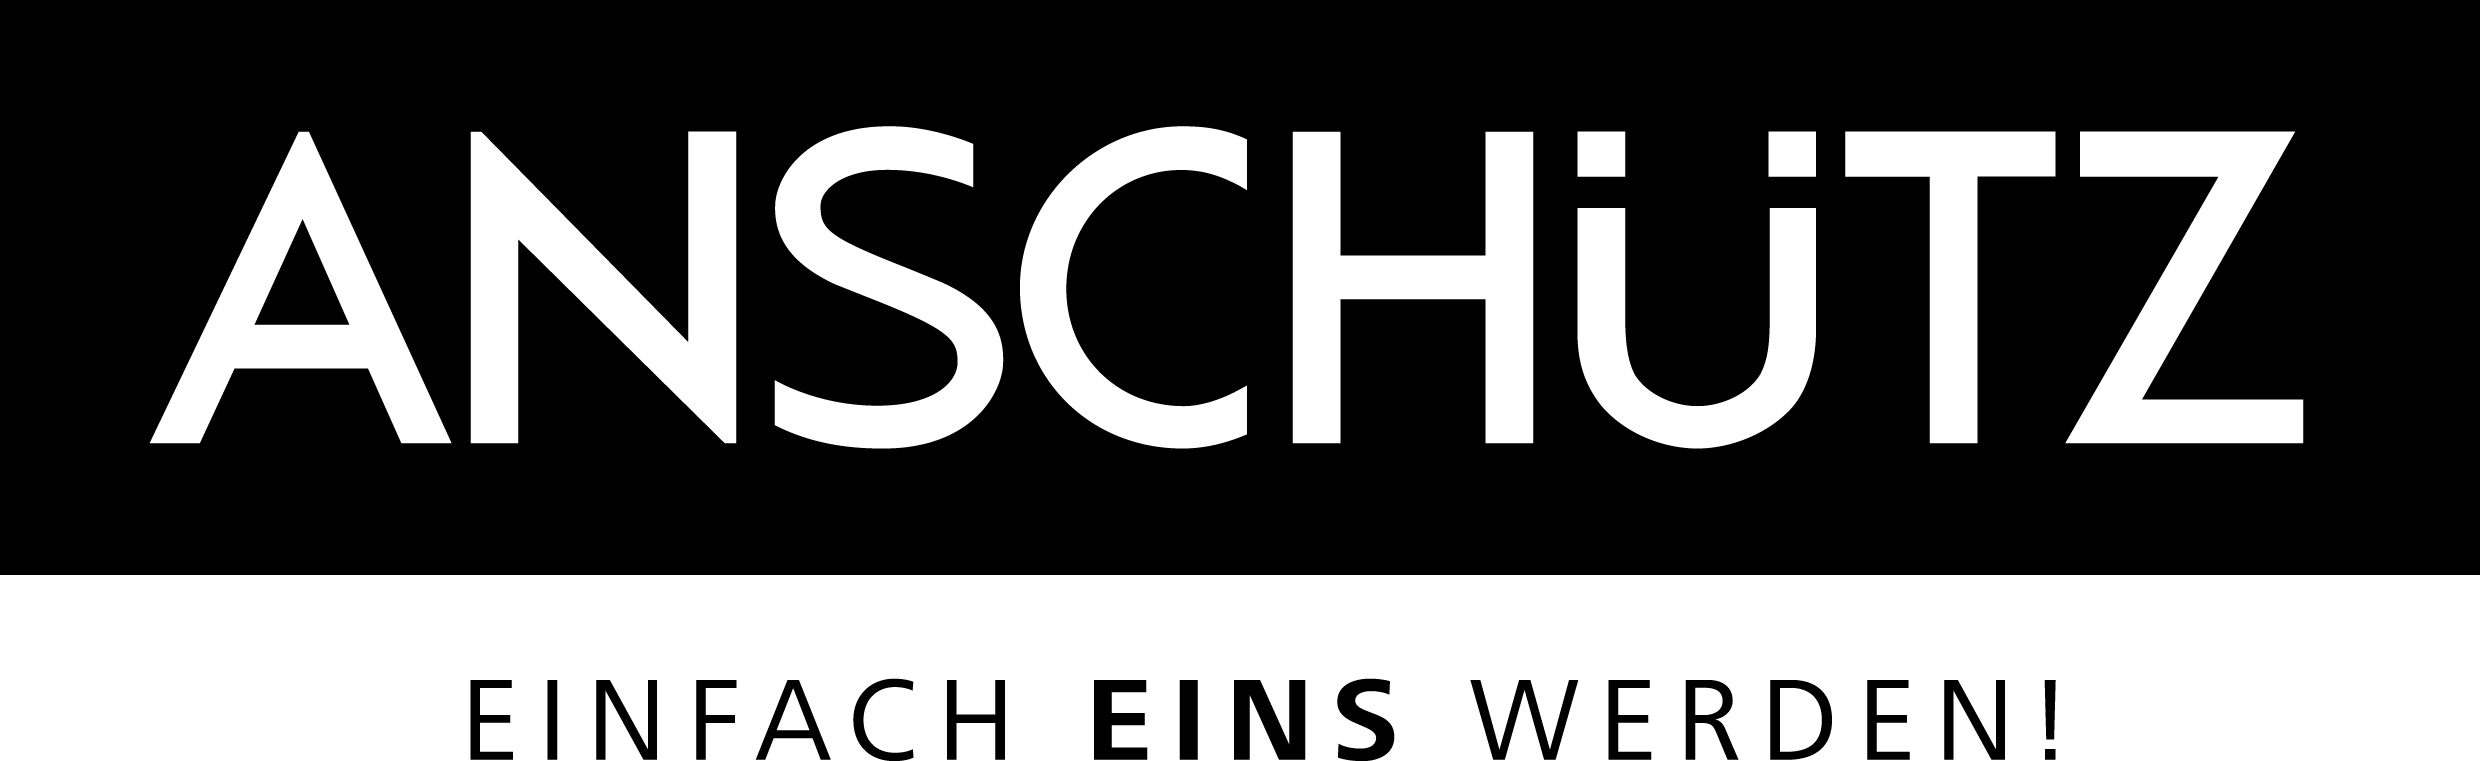 Anschuetz Logo - J.G. ANSCHÜTZ GmbH & Co. KG - Logos